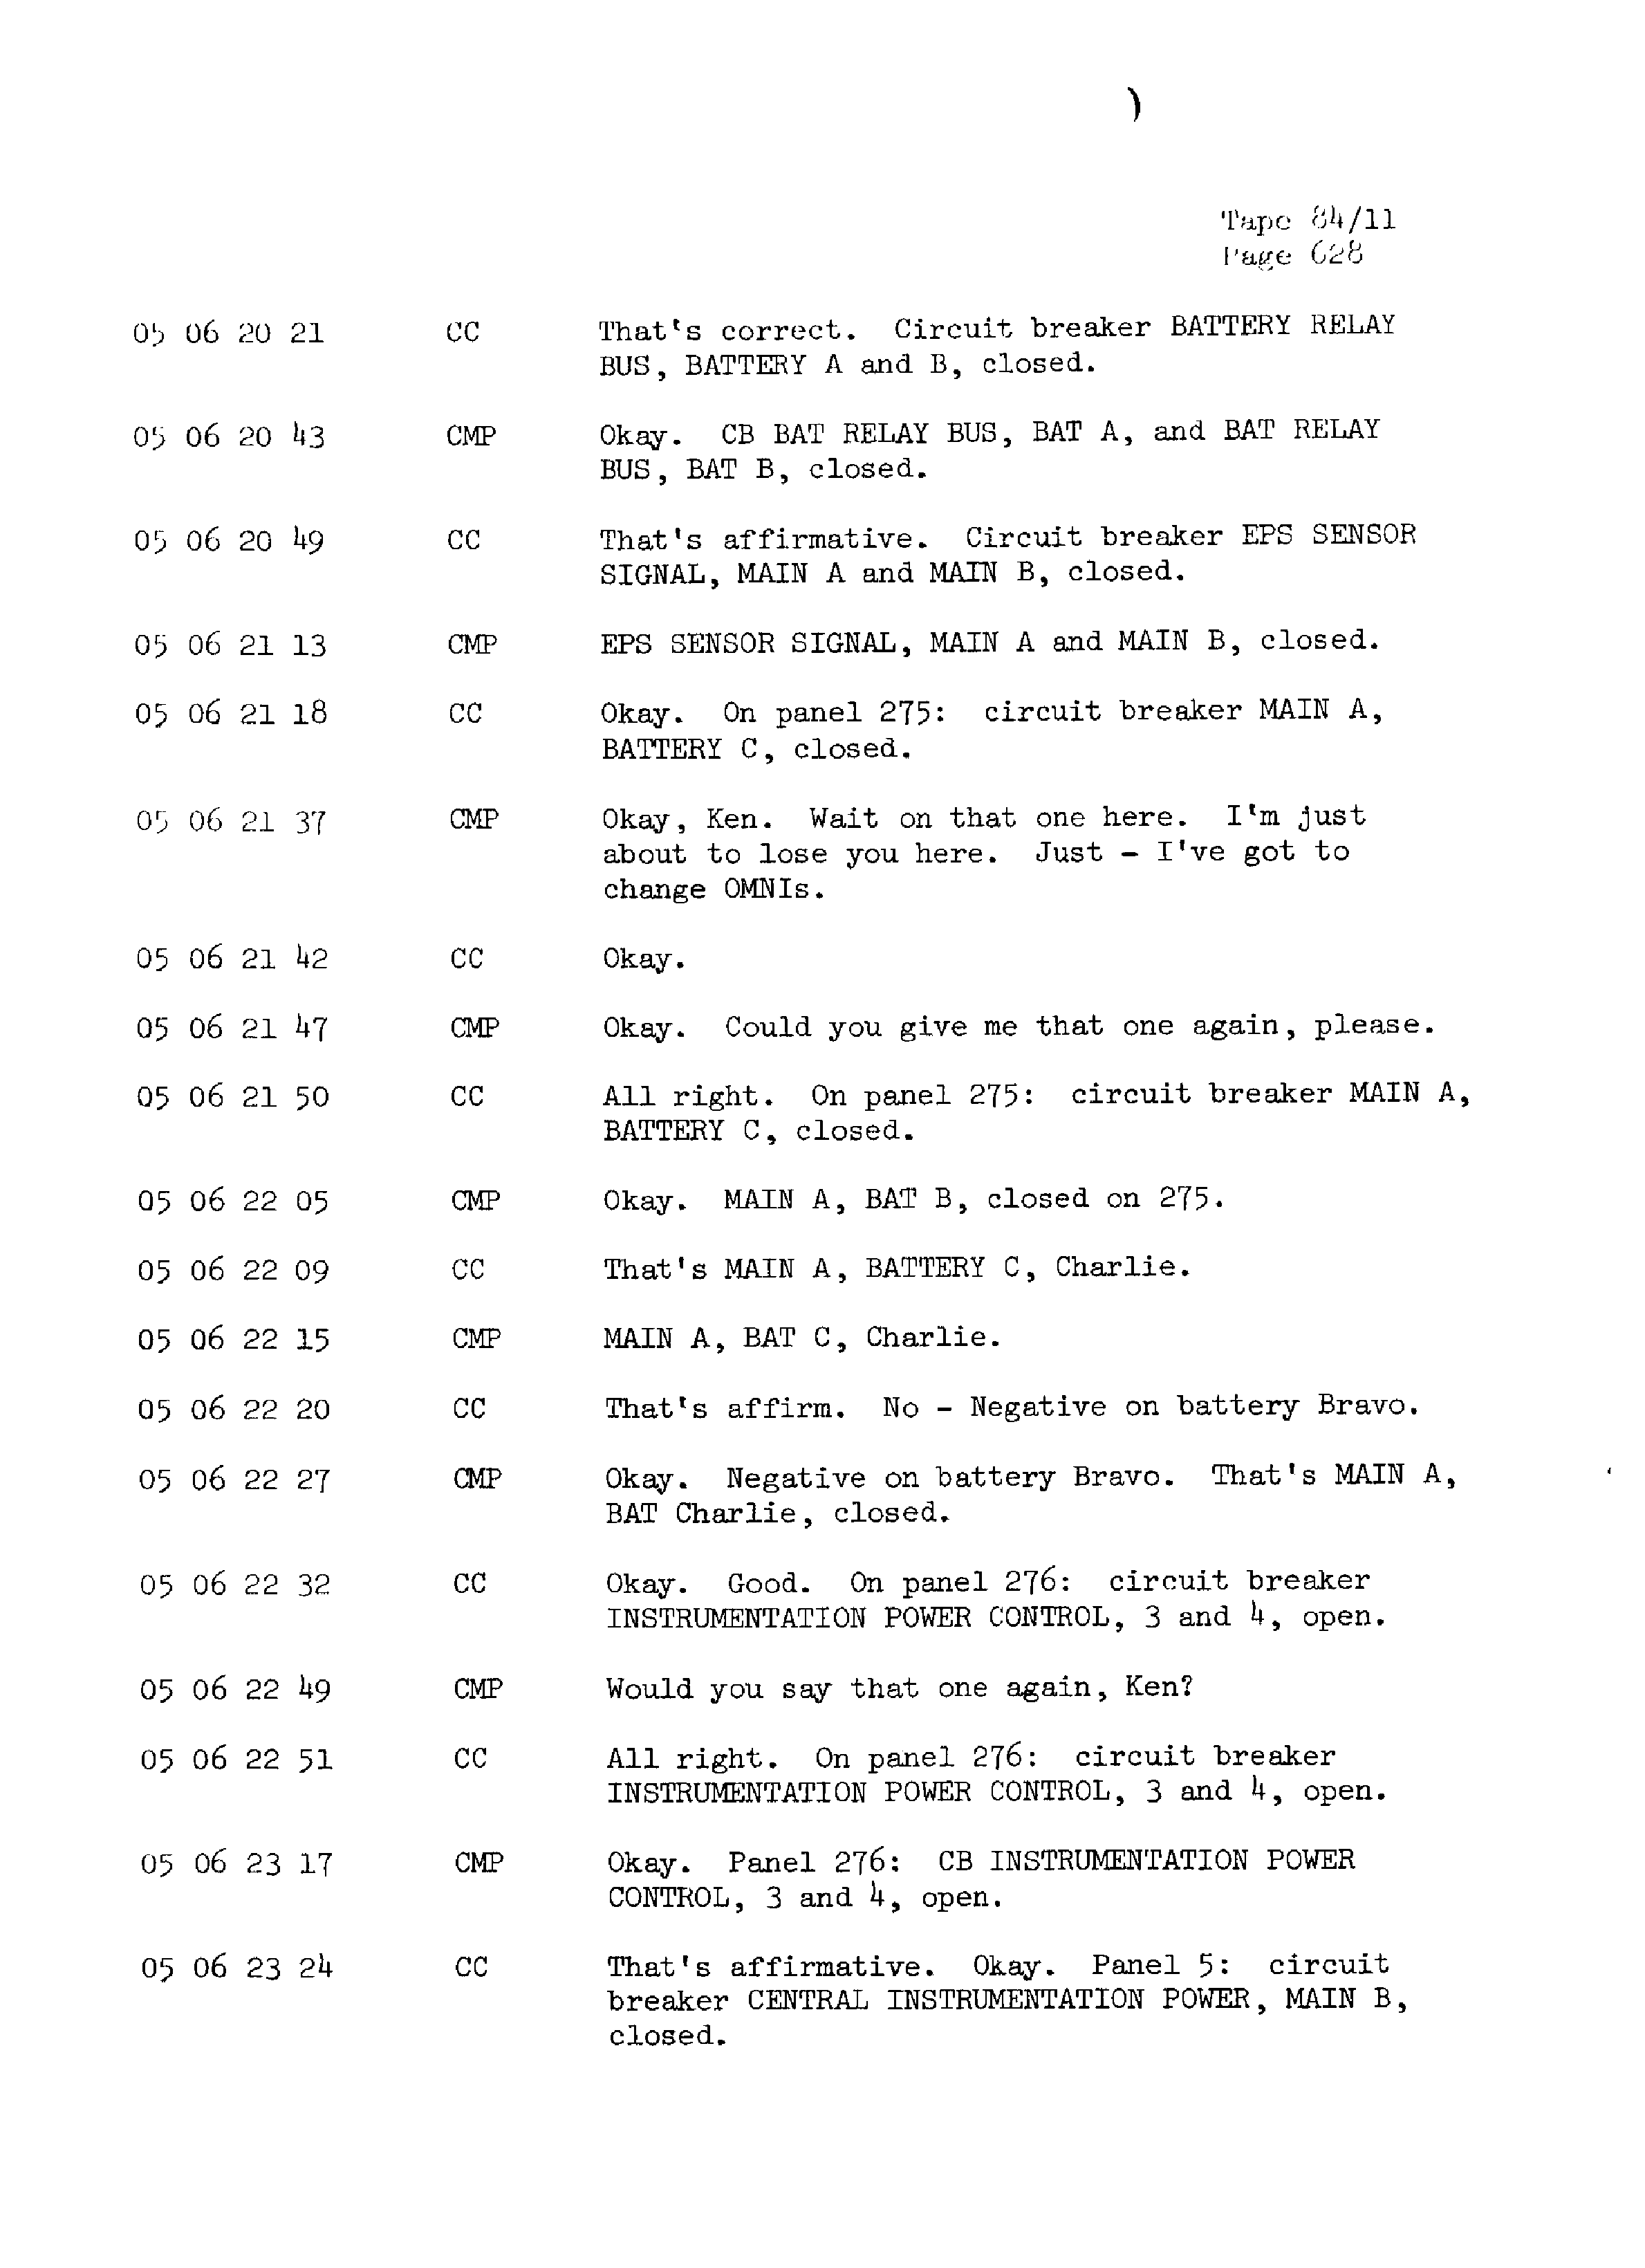 Page 635 of Apollo 13’s original transcript